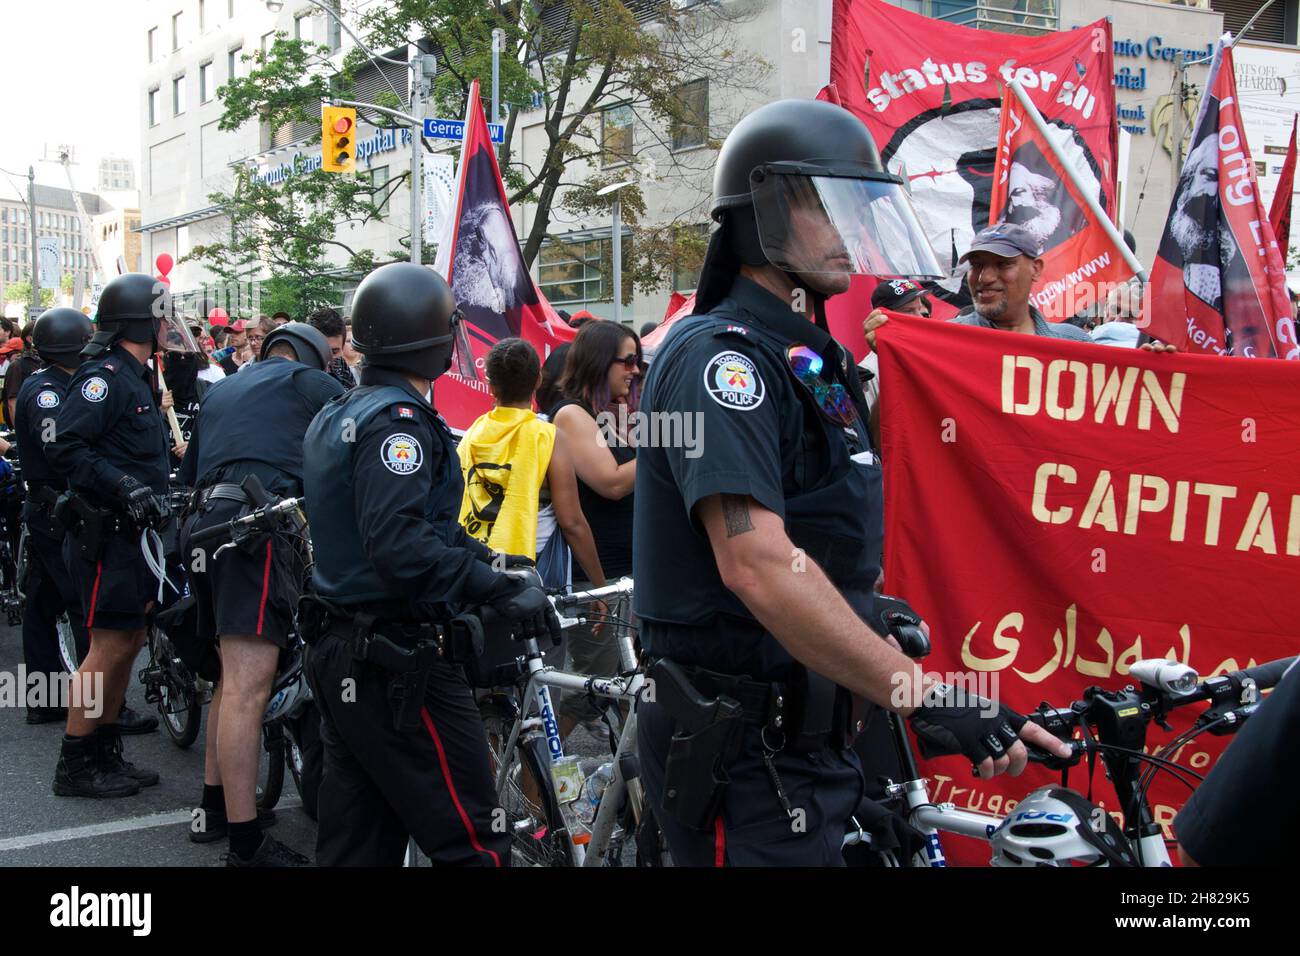 Toronto, Ontario, Kanada - 06/25/2010 : die Polizei benutzte Fahrräder, um Tausende von Aktivisten zu kontrollieren, die vor der Demonstration an der University Avenue entlang marschierten Stockfoto